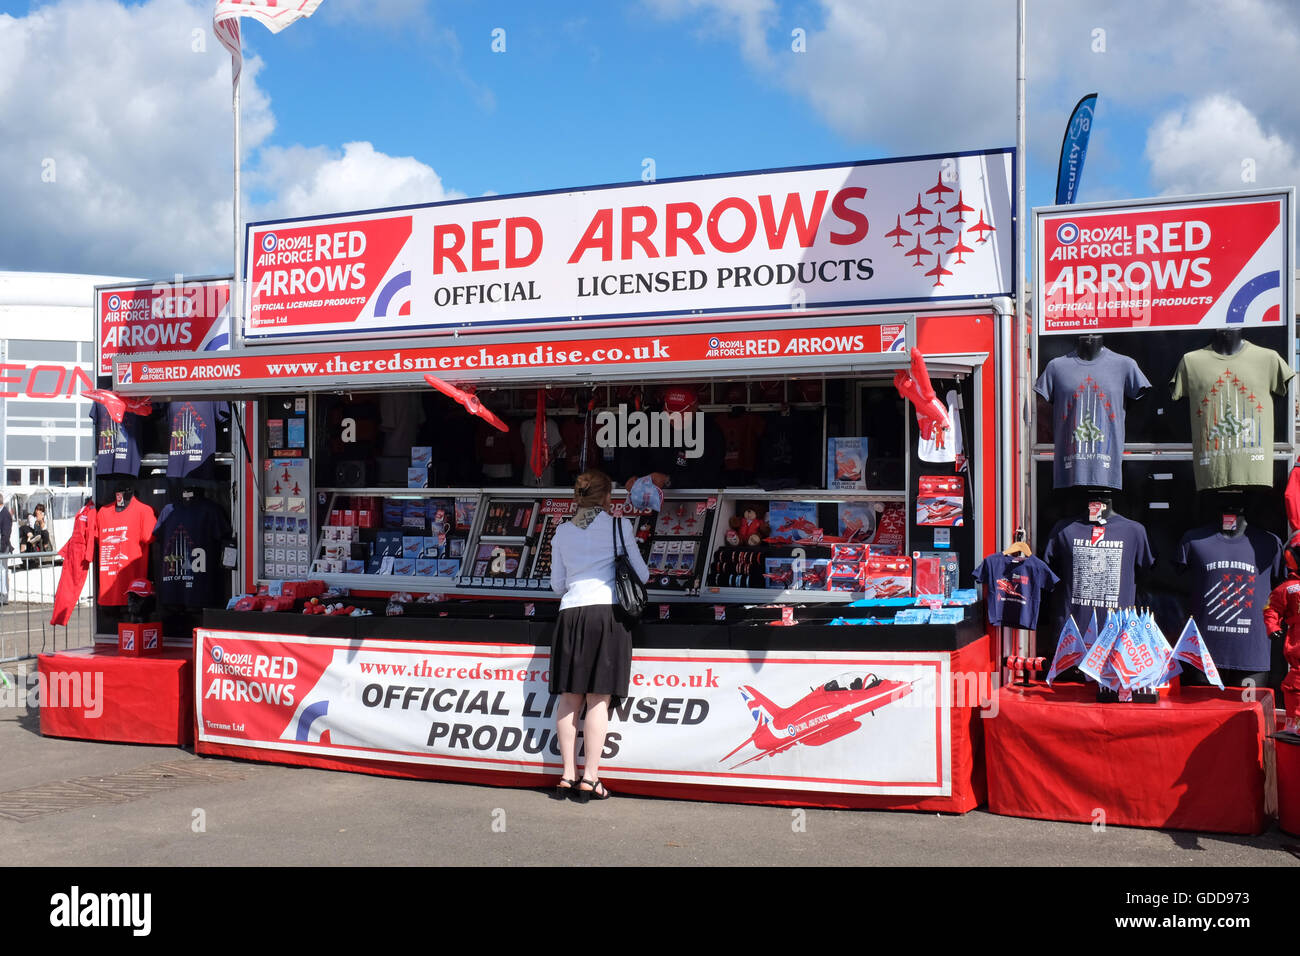 Ein Geschäft für Ware für Großbritanniens Red Arrows Kunstflug Team display. Stockfoto